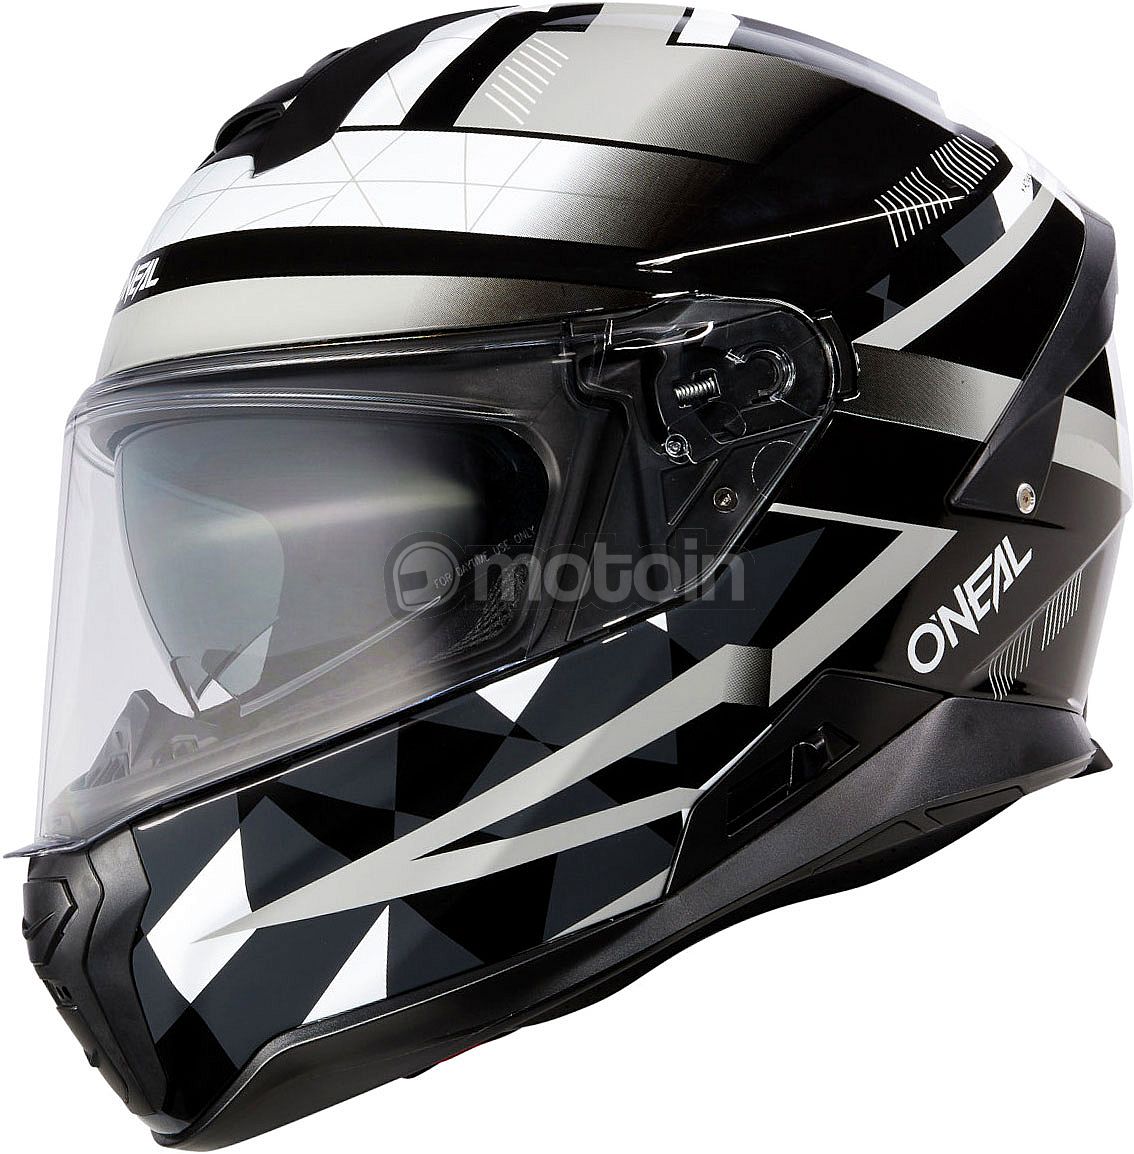 ONeal Challenger Exo, full face helmet